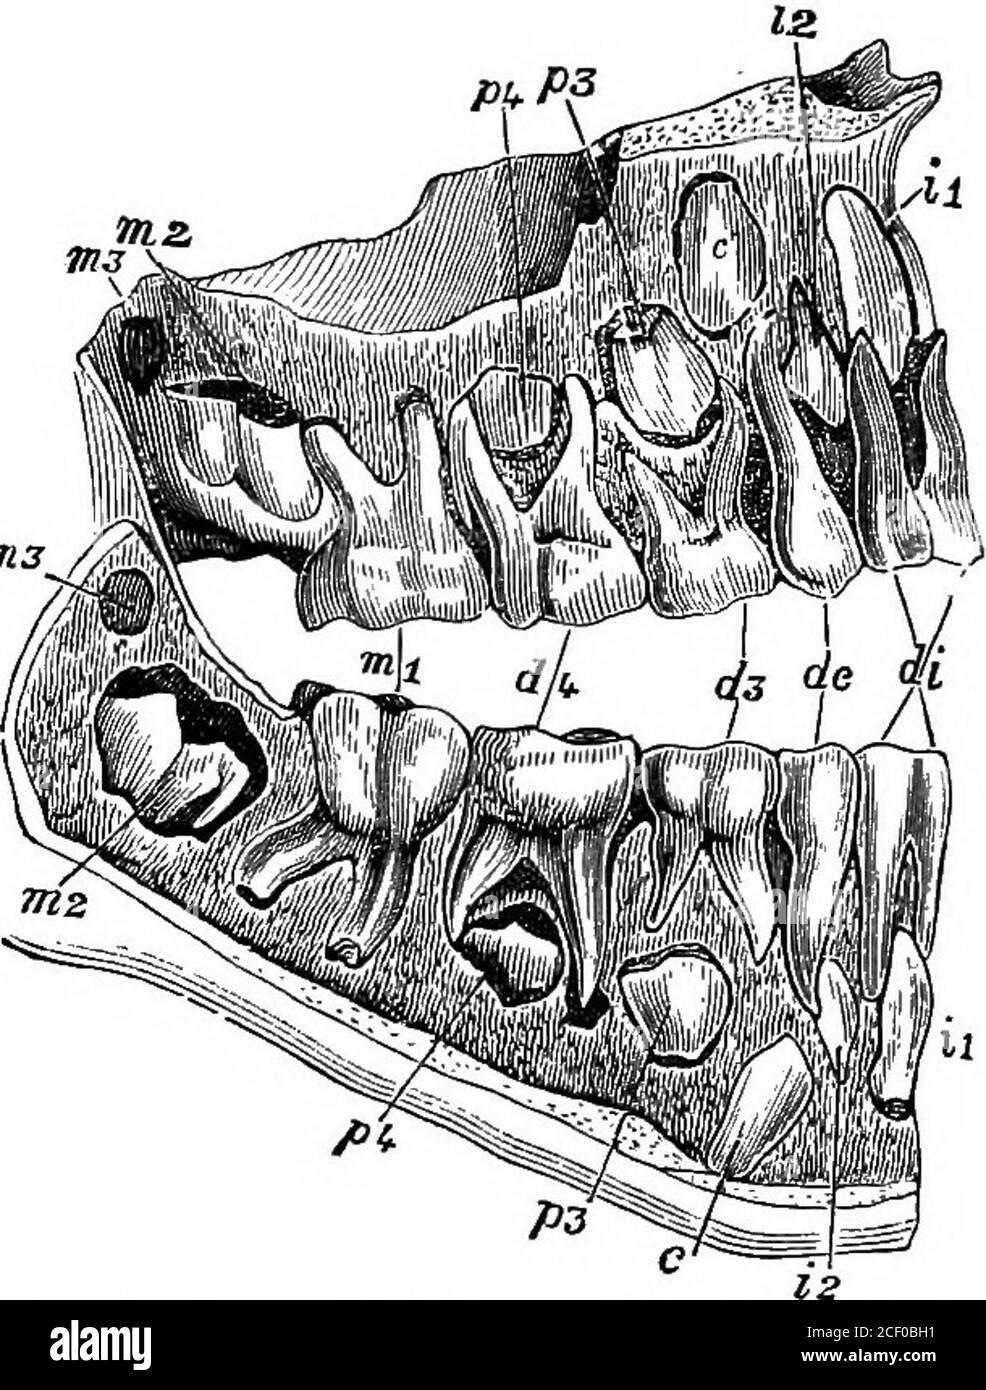 . Physiologie humaine. Figure 85. — montrant les quatre types de HumanTeeth. X, dent incisienne (vue extérieure) ;2, dent canine (extériorview) ; 3, dent bicuspide (sideduew montrant les deux cuspides) ; 4, dent molaire (vue extérieure). Figure 86.—Section des mâchoires d'un enfant de 61Years, montrant le lait ou les dents décidues, également les dents permanentes en cours de formation. Di, les incisives de lait ; dc, les canines de lait ; &lt;£}, et di, themilk molaires; zi et iz, les incisives permanentes; £,thecanines permanentes ; ^3 et /.), les bicuspides permanents;mi, les premiers molaires permanents, qui ont déjà madeeux appearan Banque D'Images